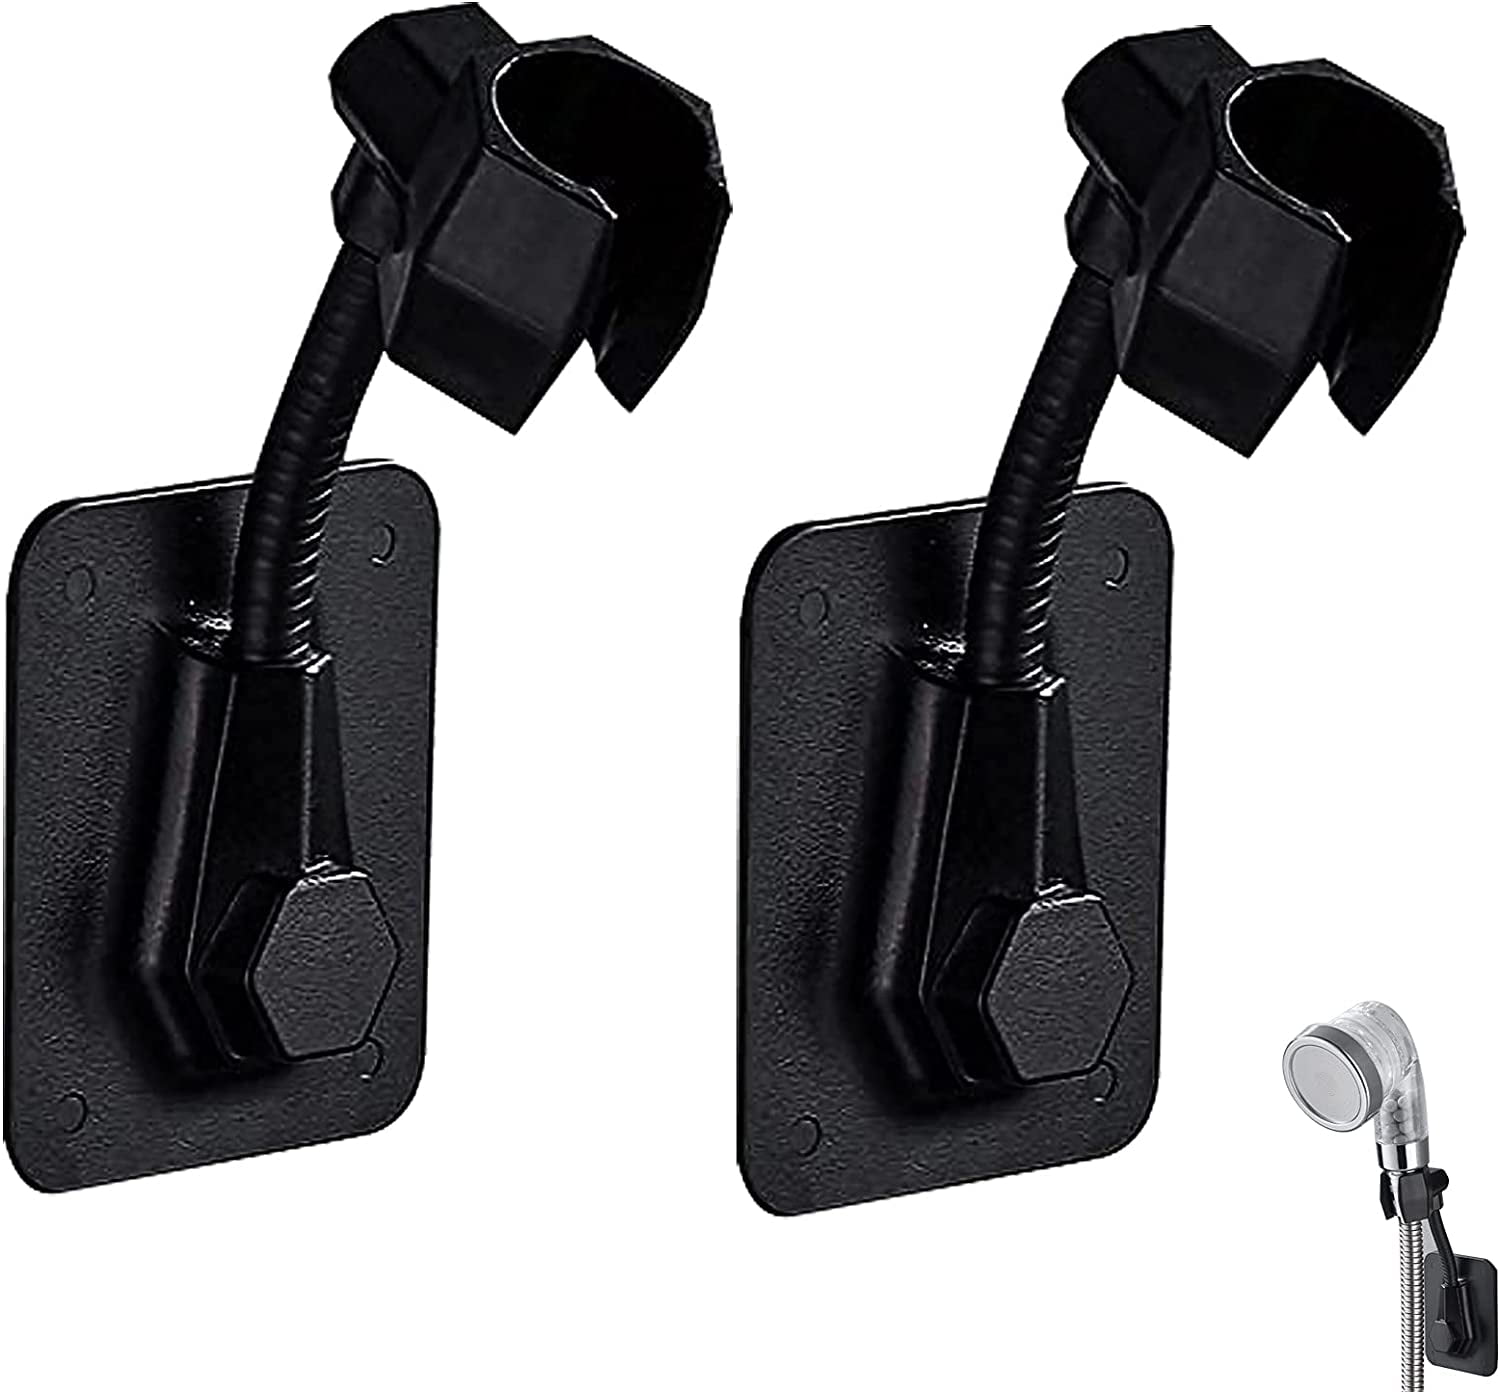 Details about   Adjustable Shower Head Holder Handset Bathroom Wall Mount no drilling bracket 